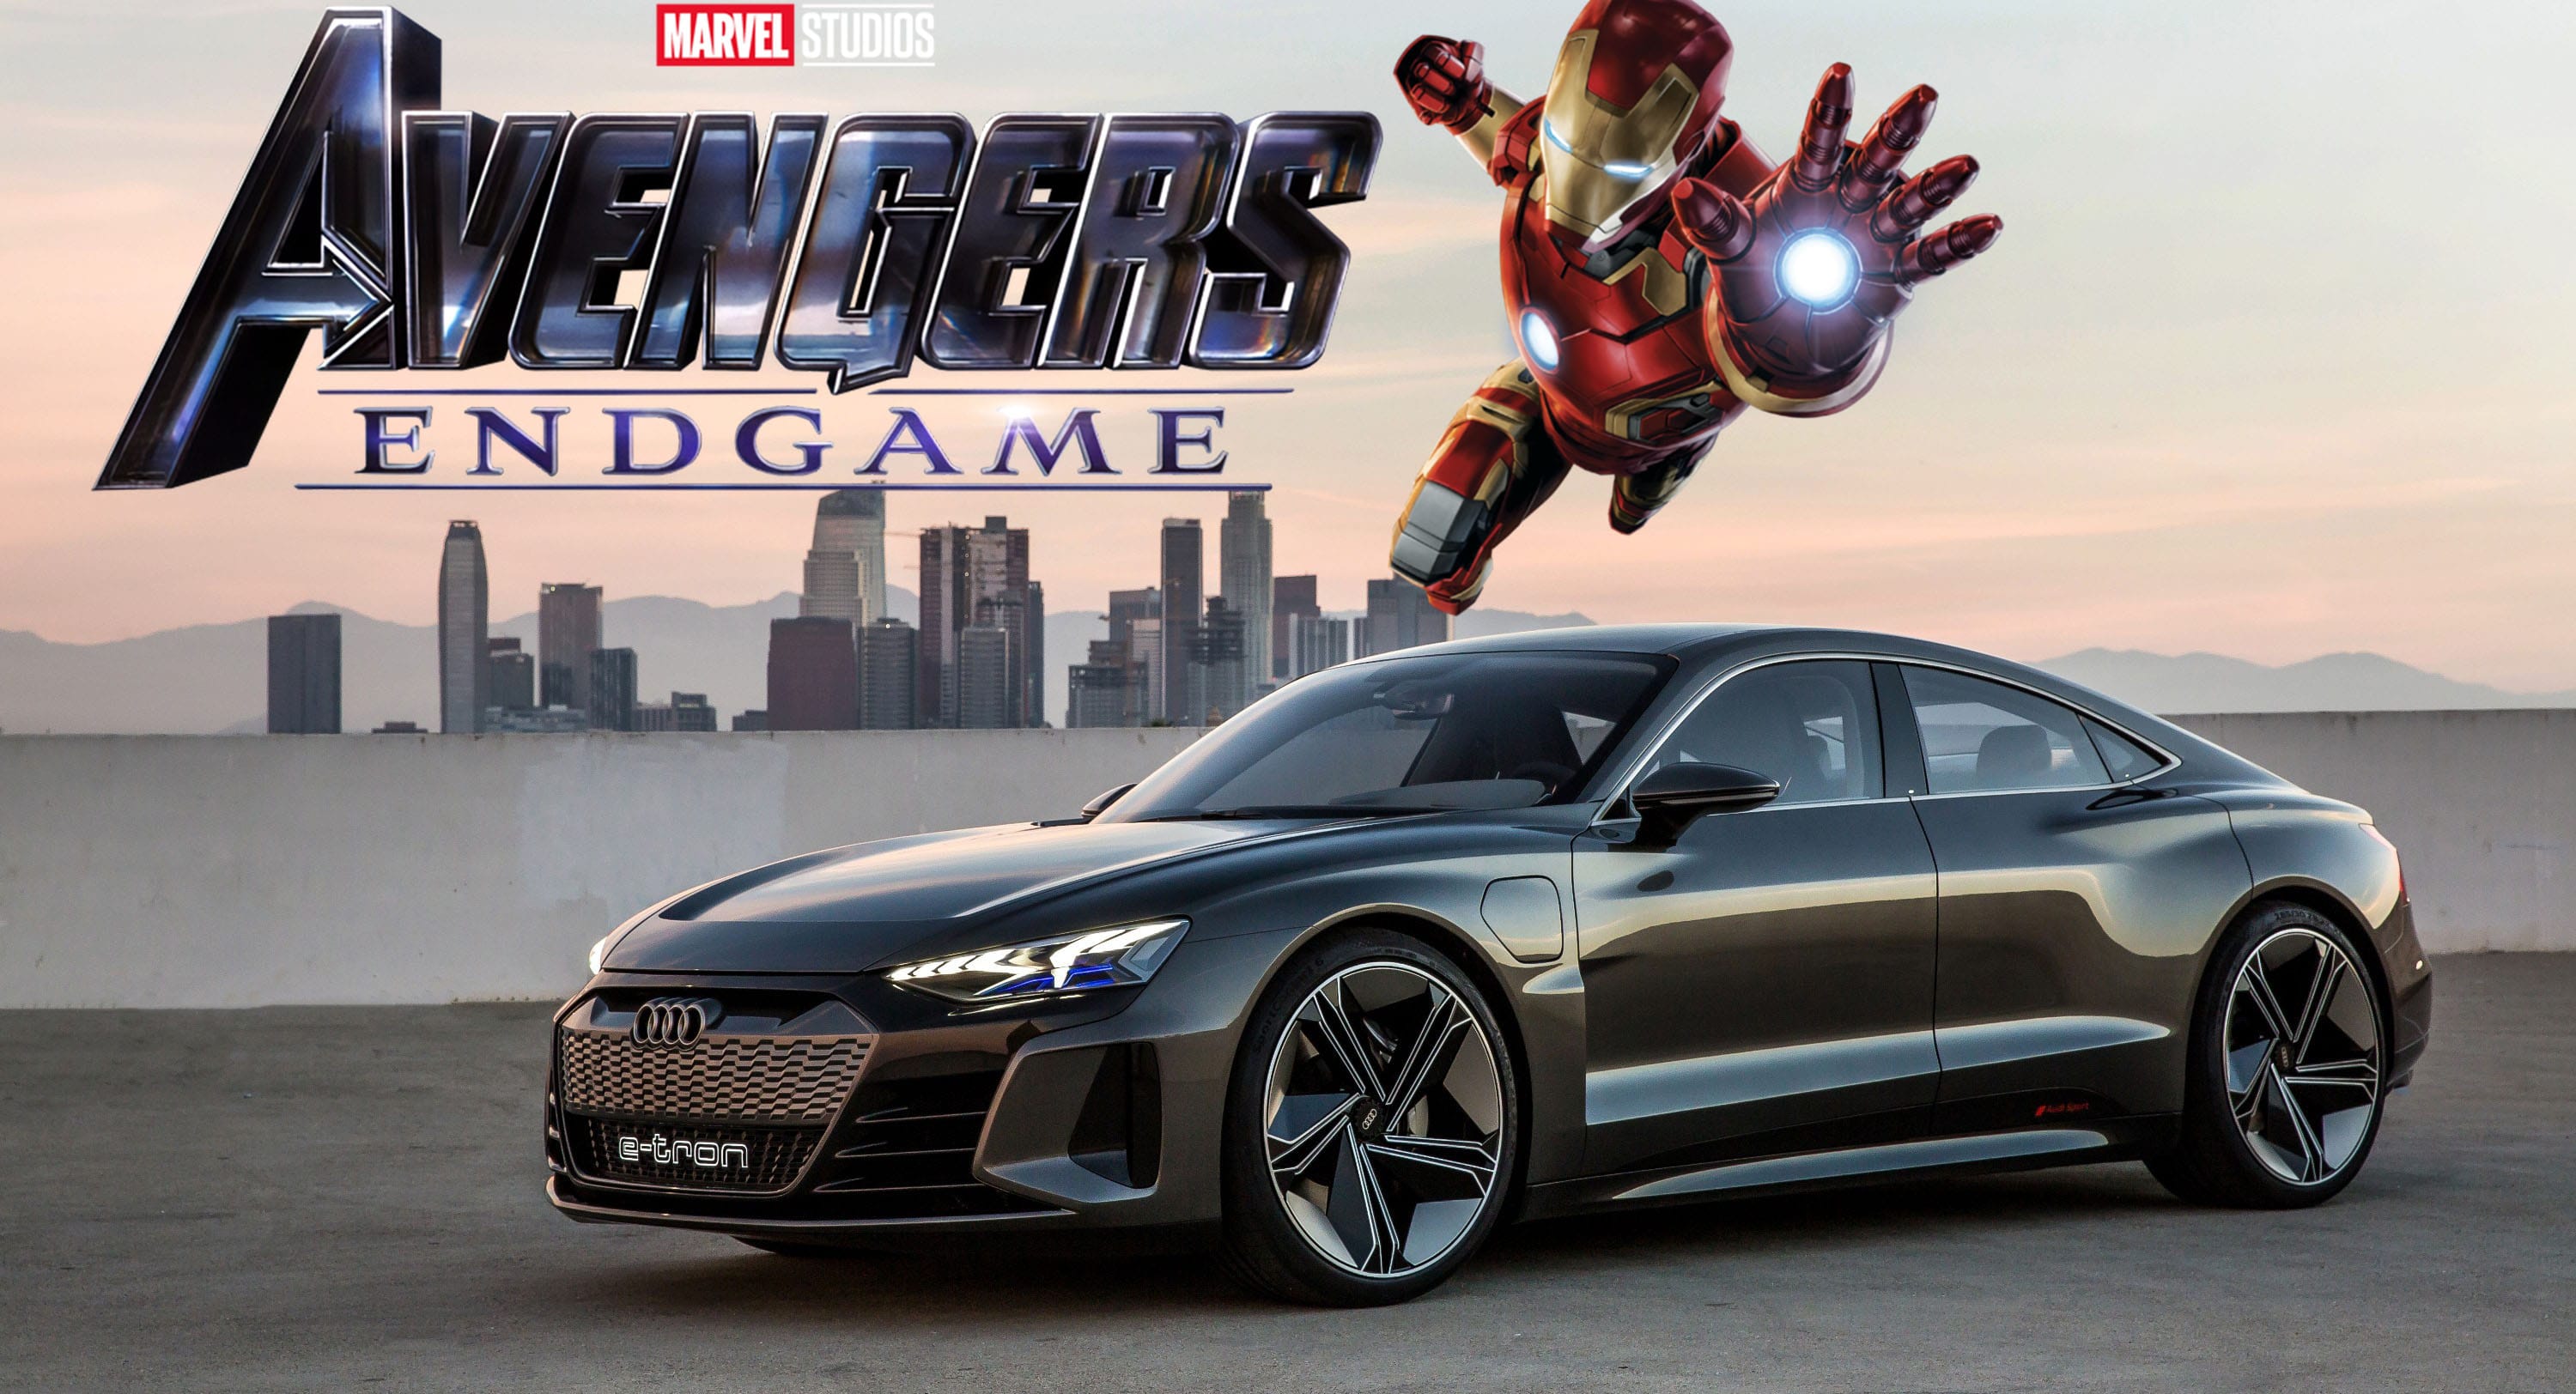 Audi May Have Spoiled Major ‘Avengers: Endgame’ Plotpoint